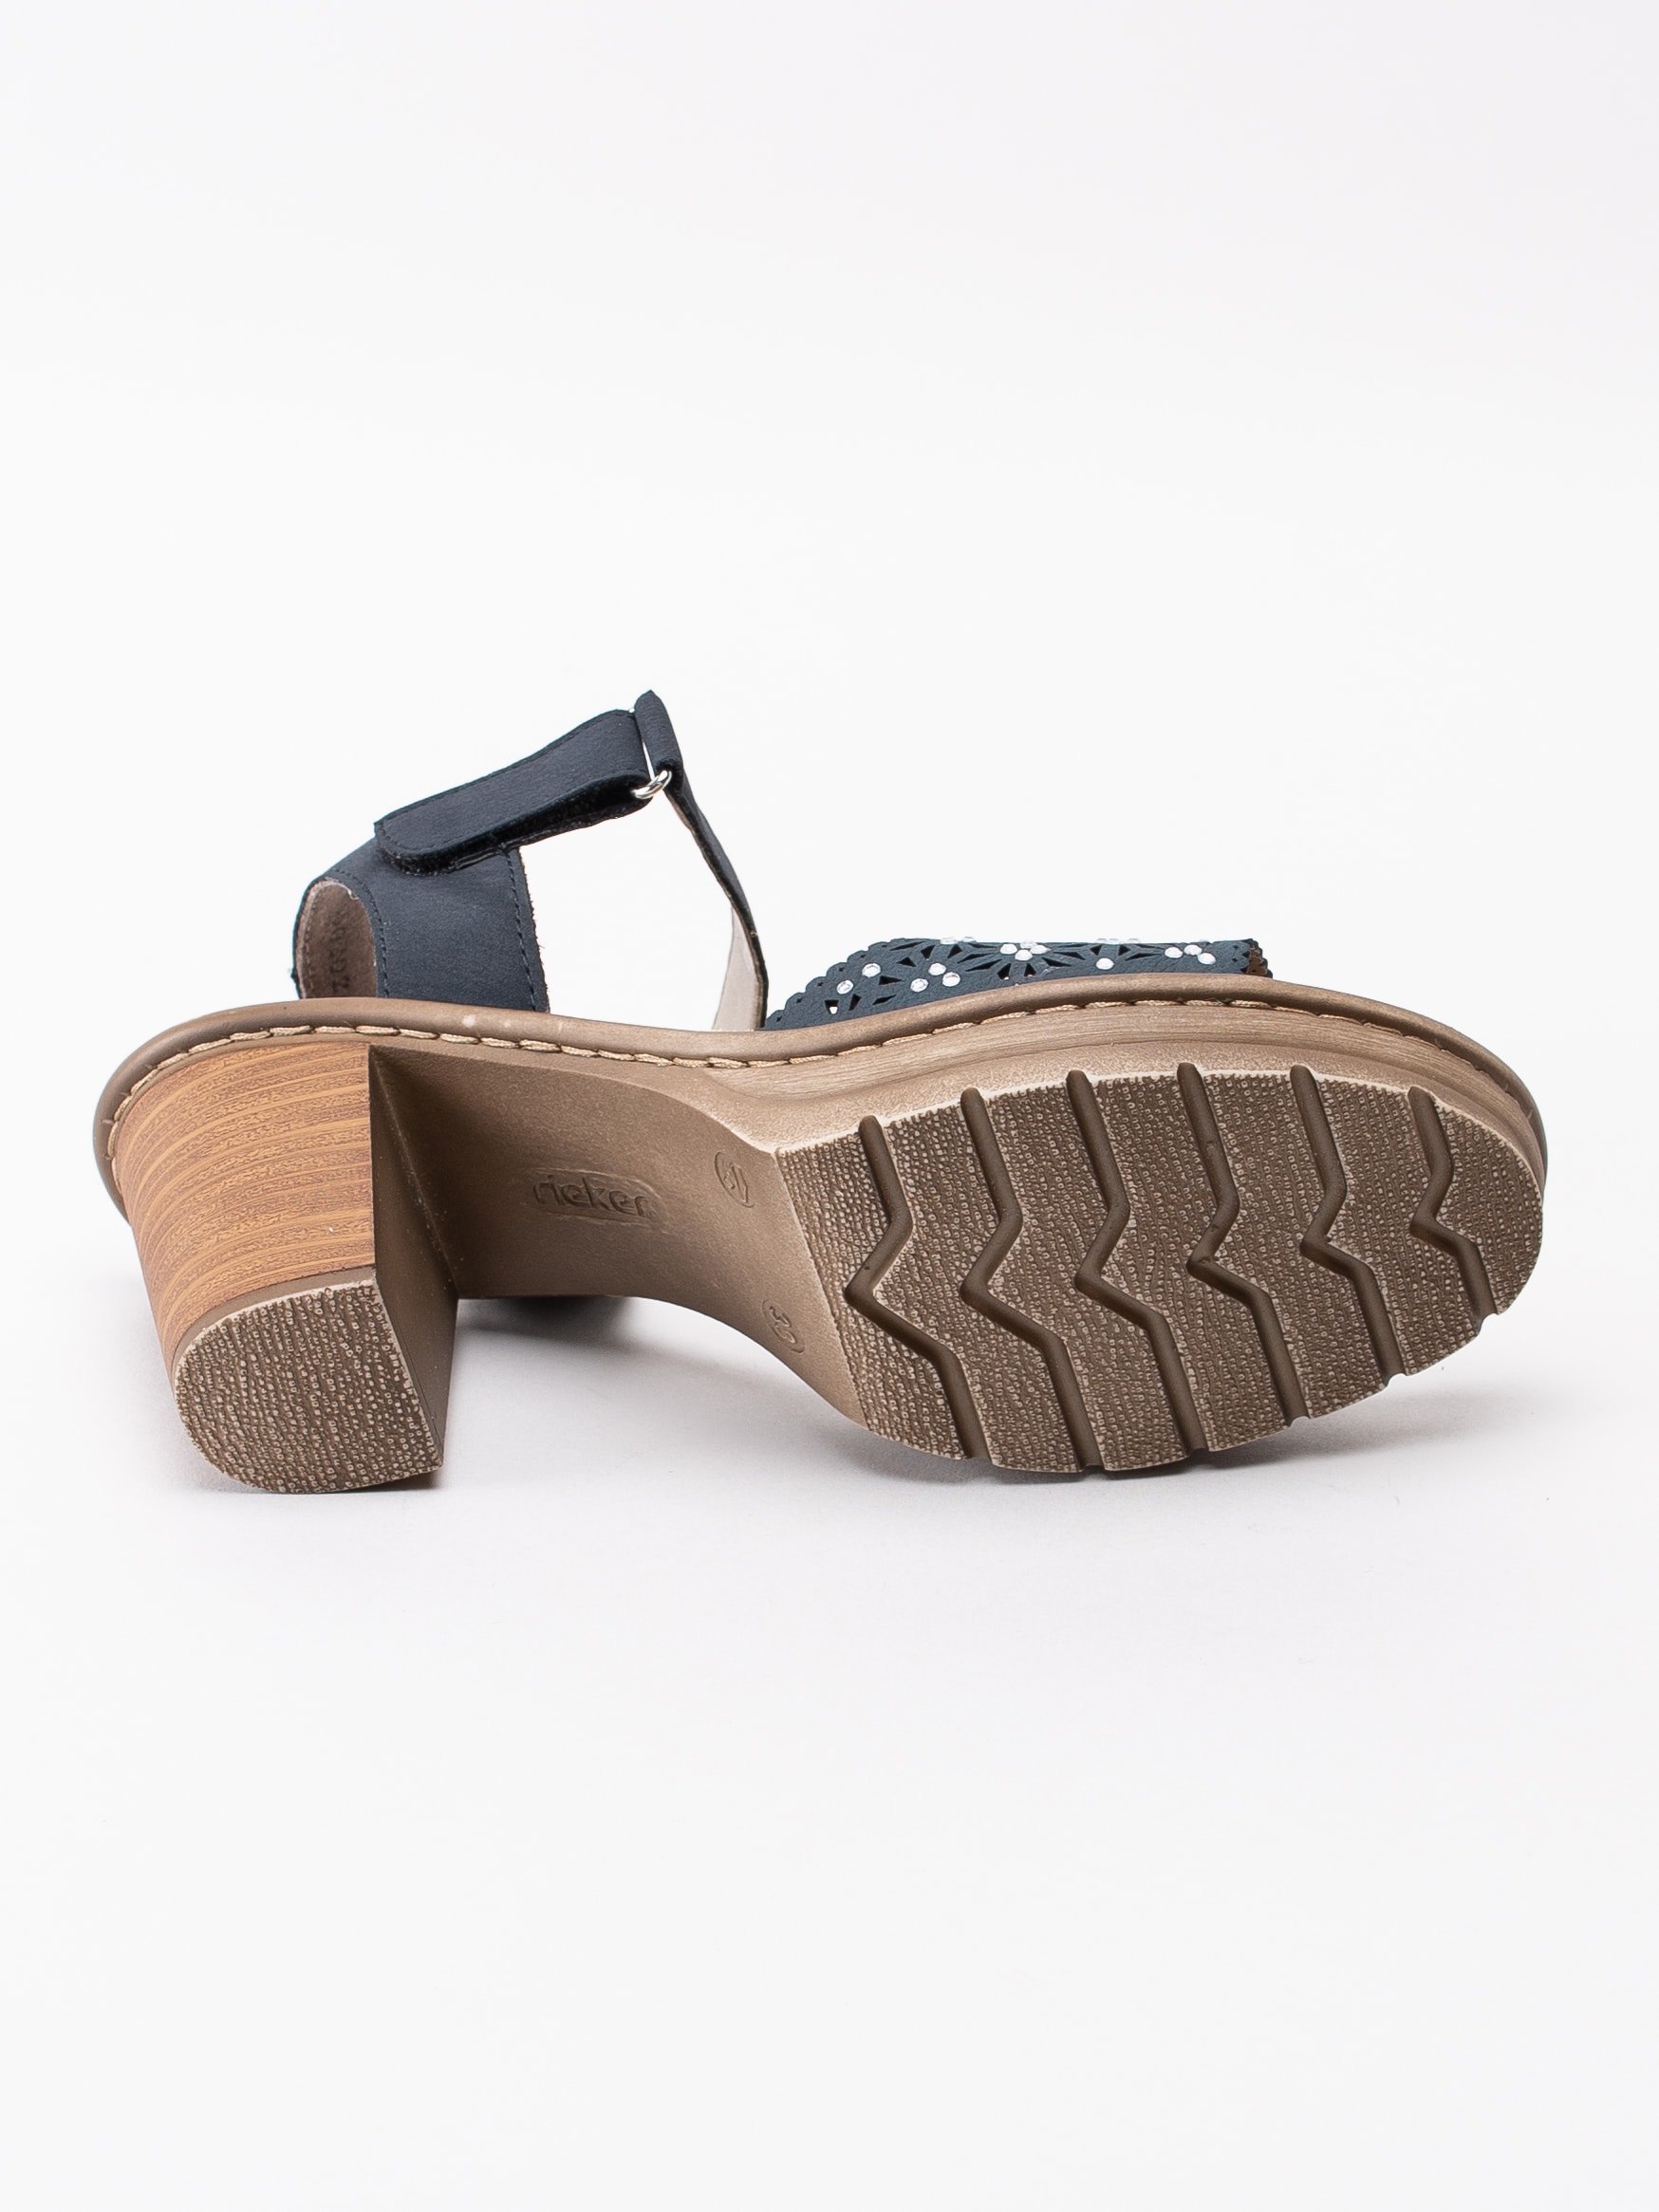 06191085 Rieker V1570-14 mörkblå sandaletter med strasstenar-5